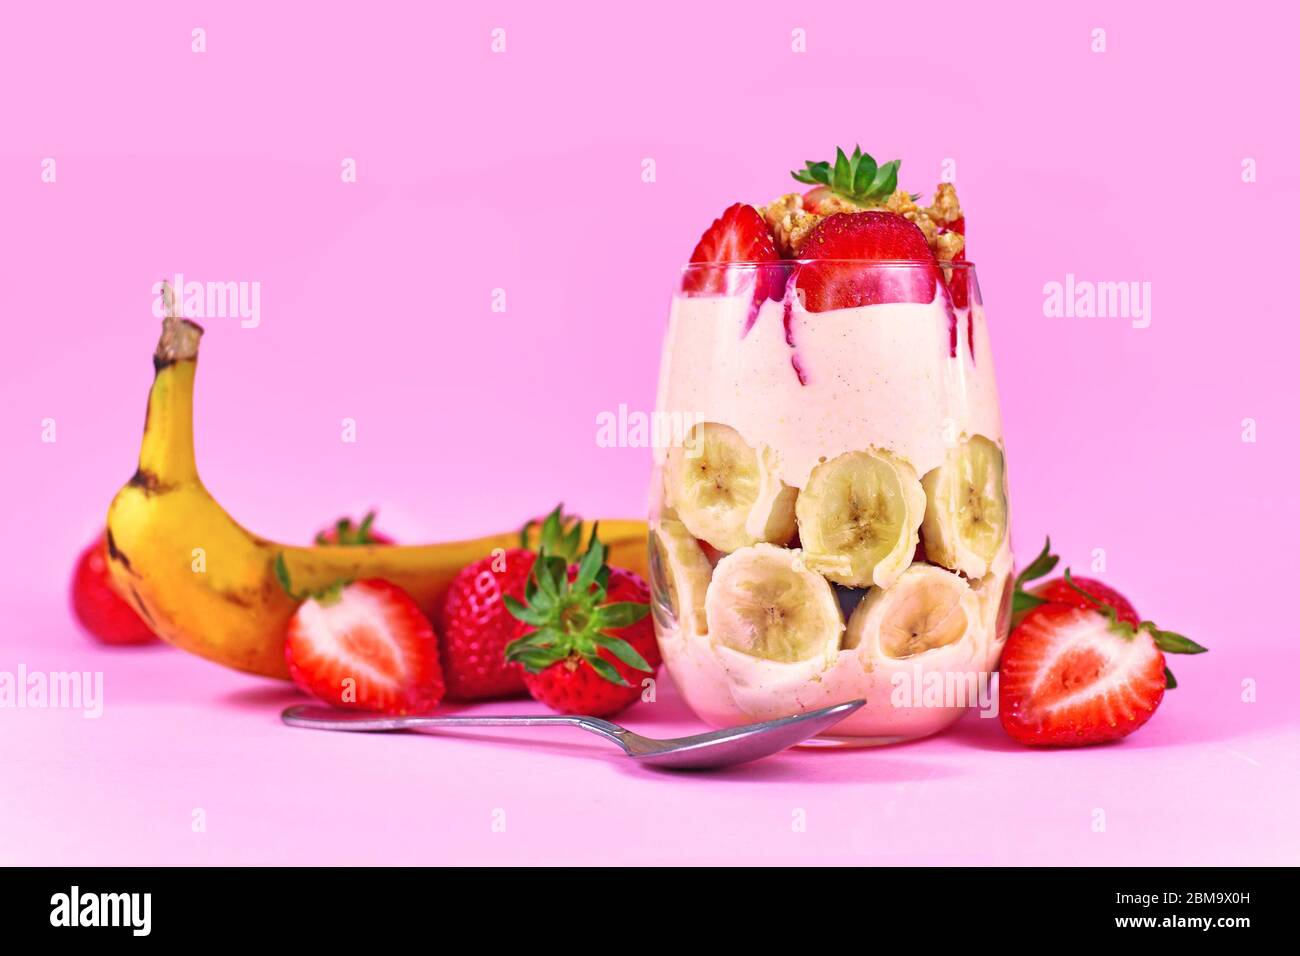 Dessert d'été sain aux fruits de la banane et de la fraise avec yaourt et granola sur fond rose Banque D'Images